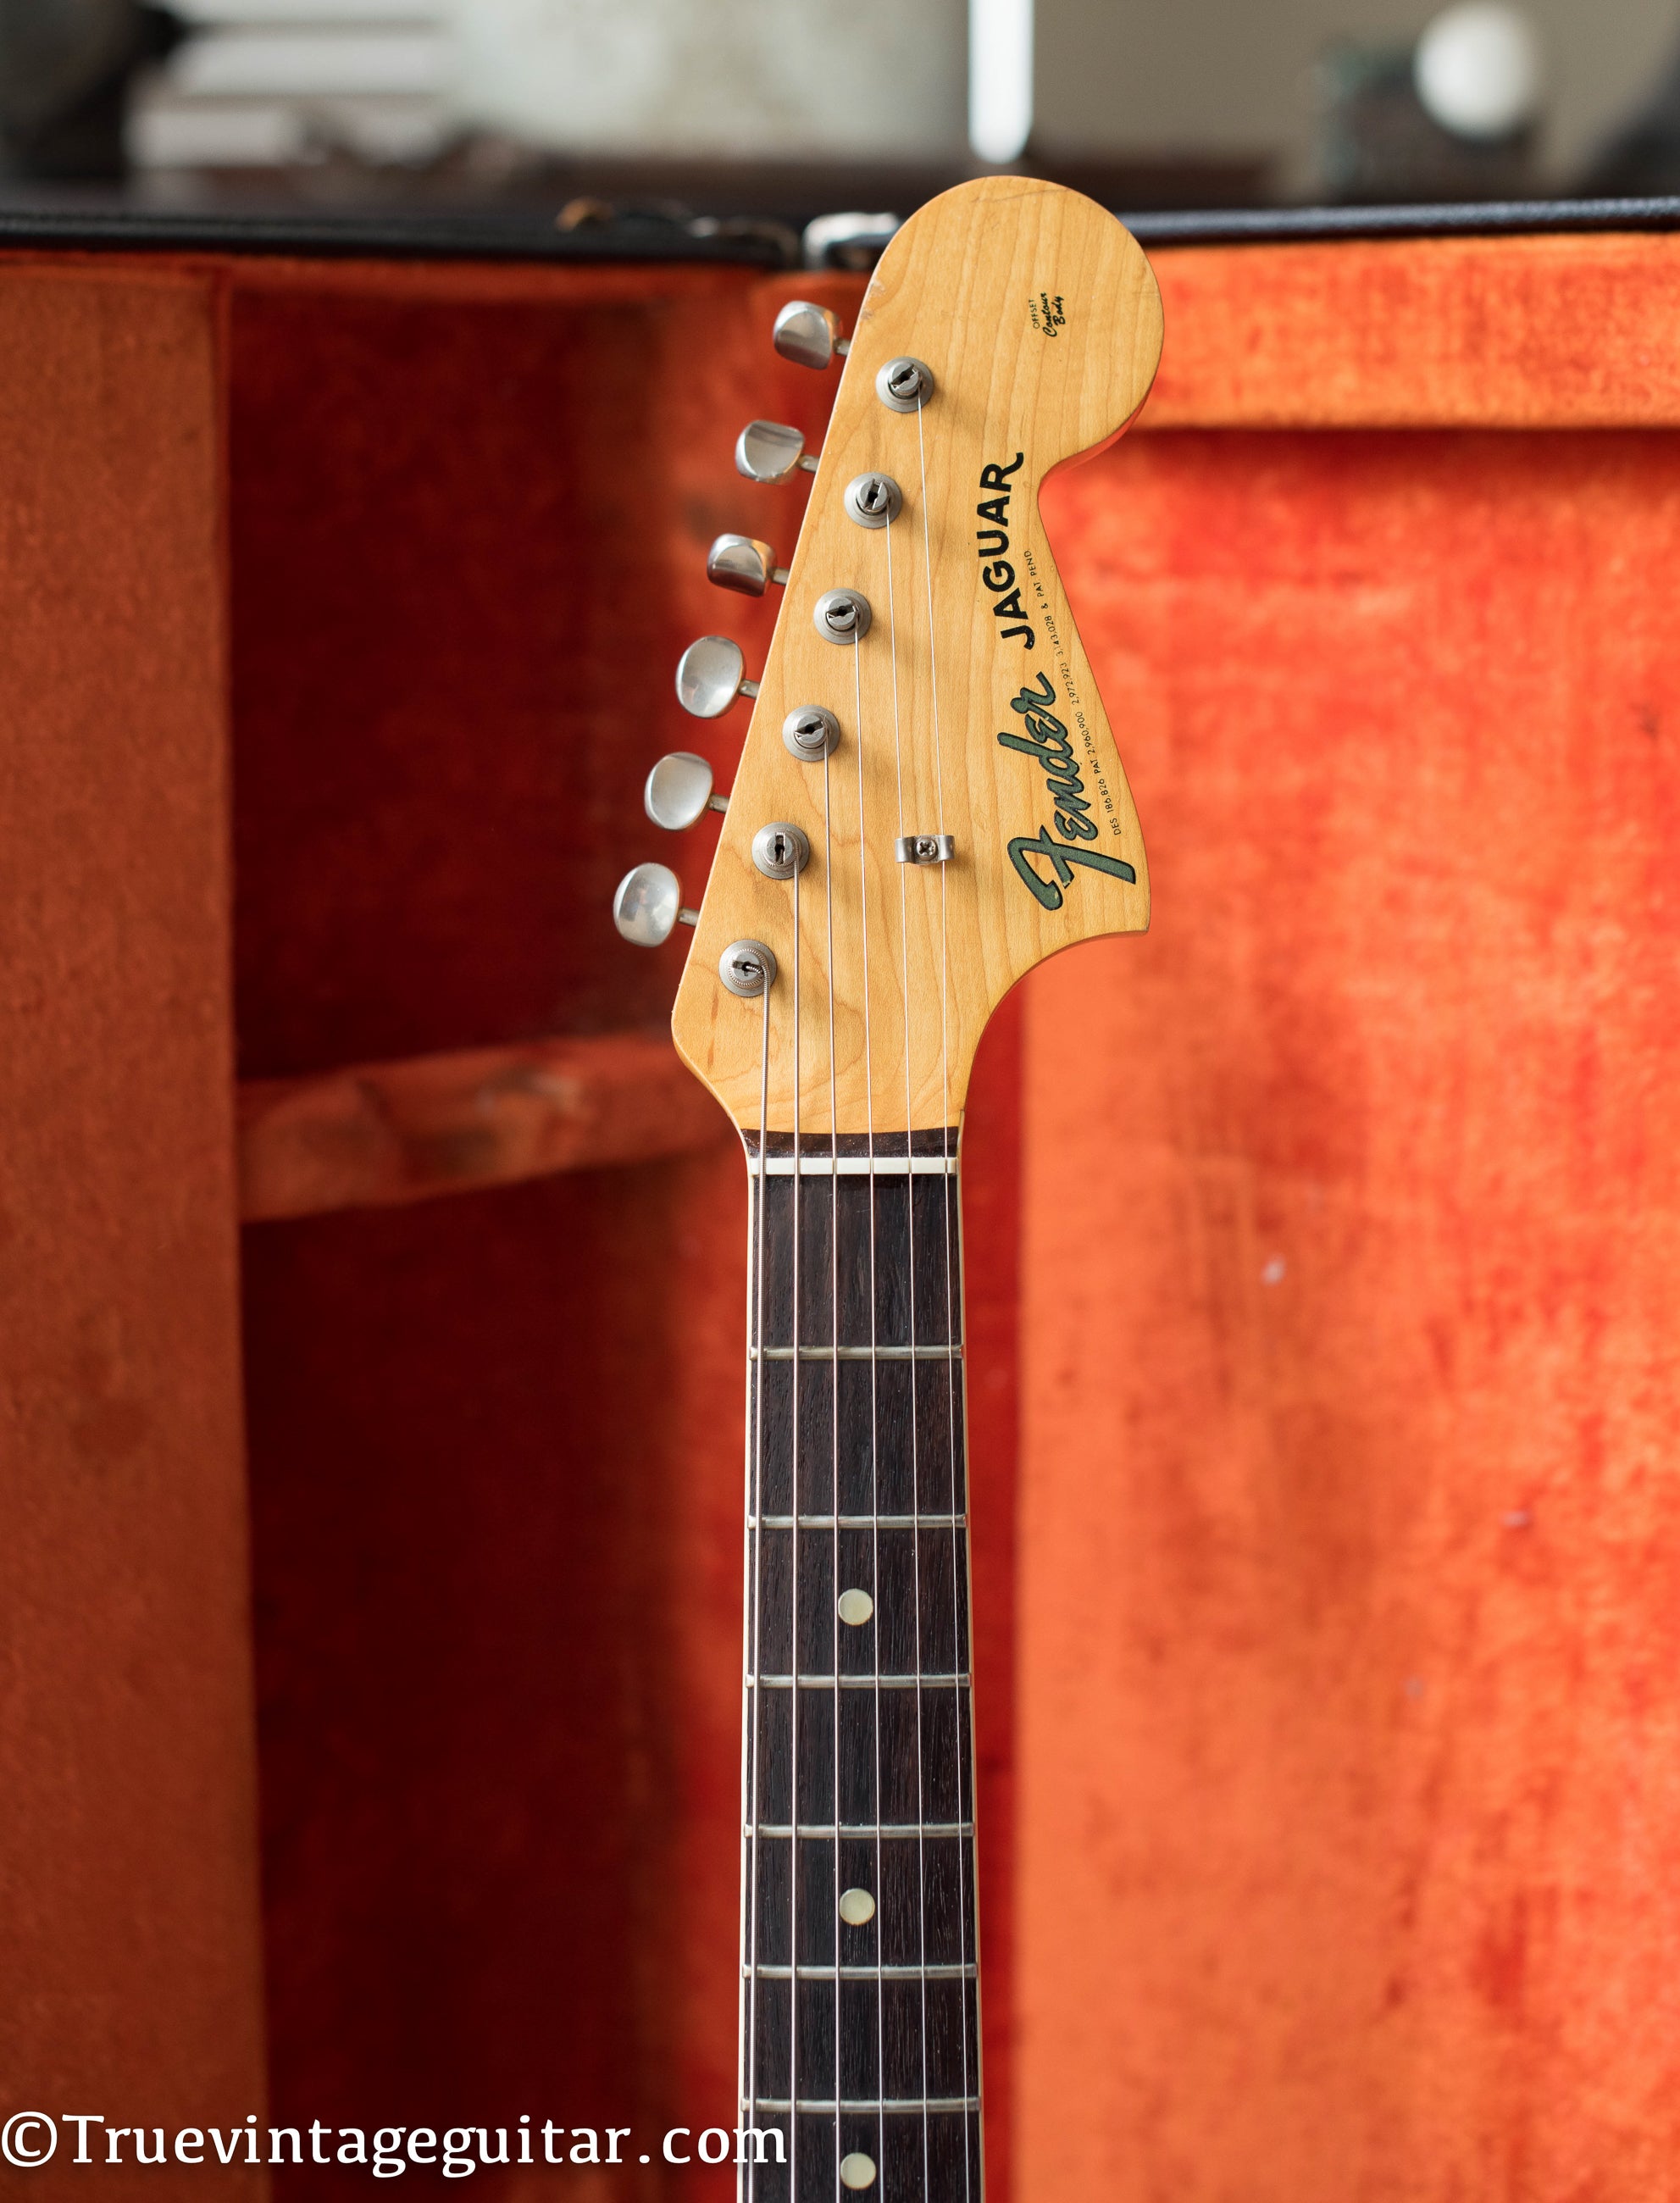 Fender Jaguar headstock, vintage 1965